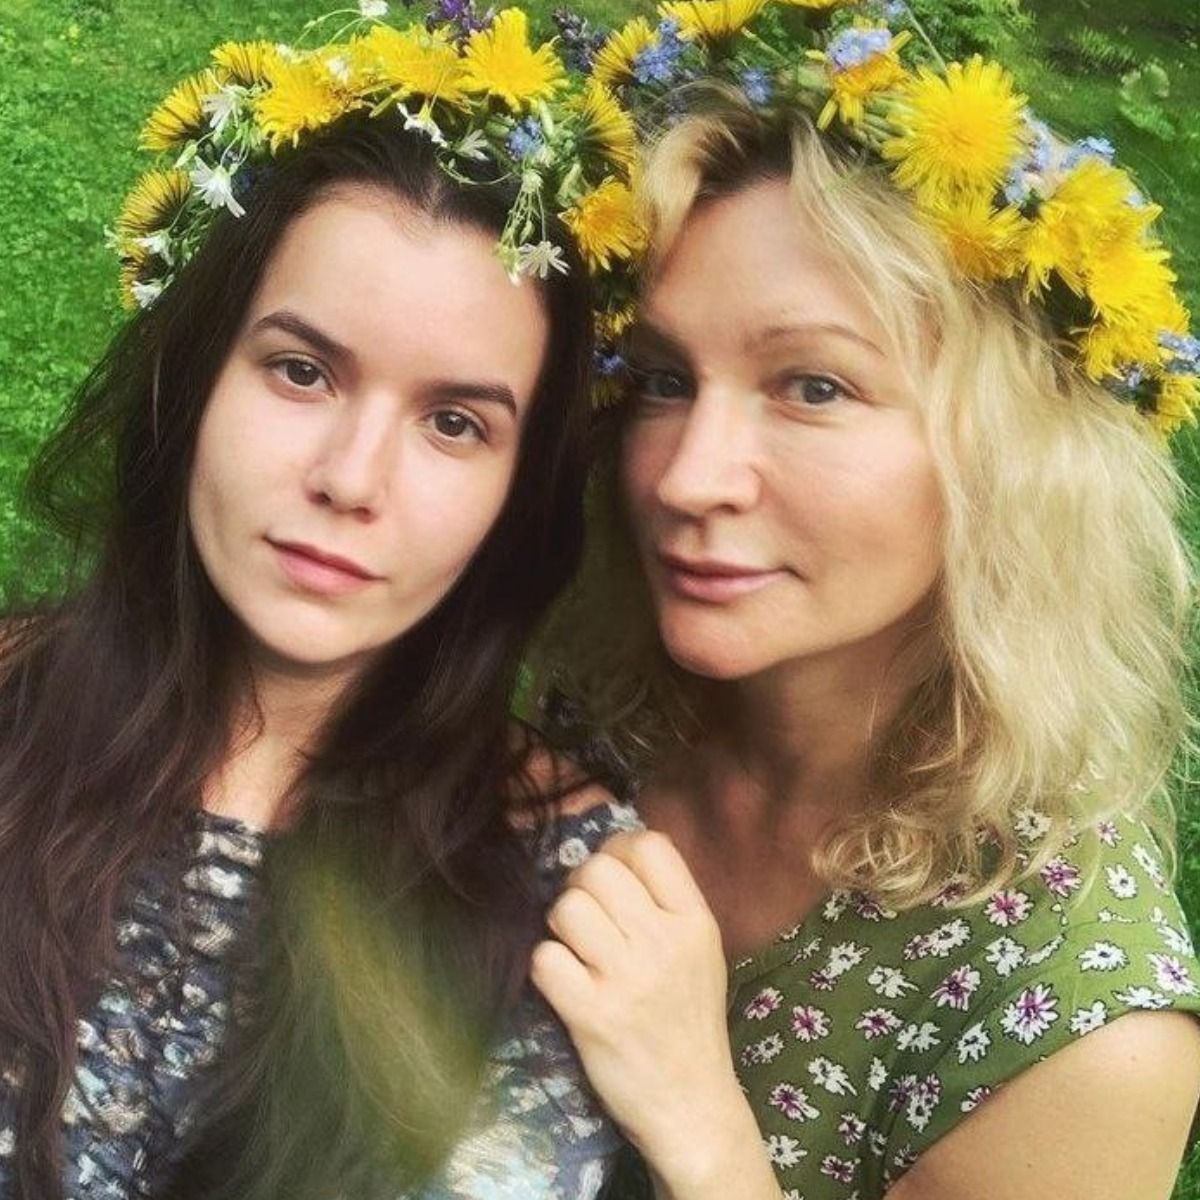 Звезда сериала «Склифосовский» Анна Якунина поздравила дочь с днем рождения  - Вокруг ТВ.